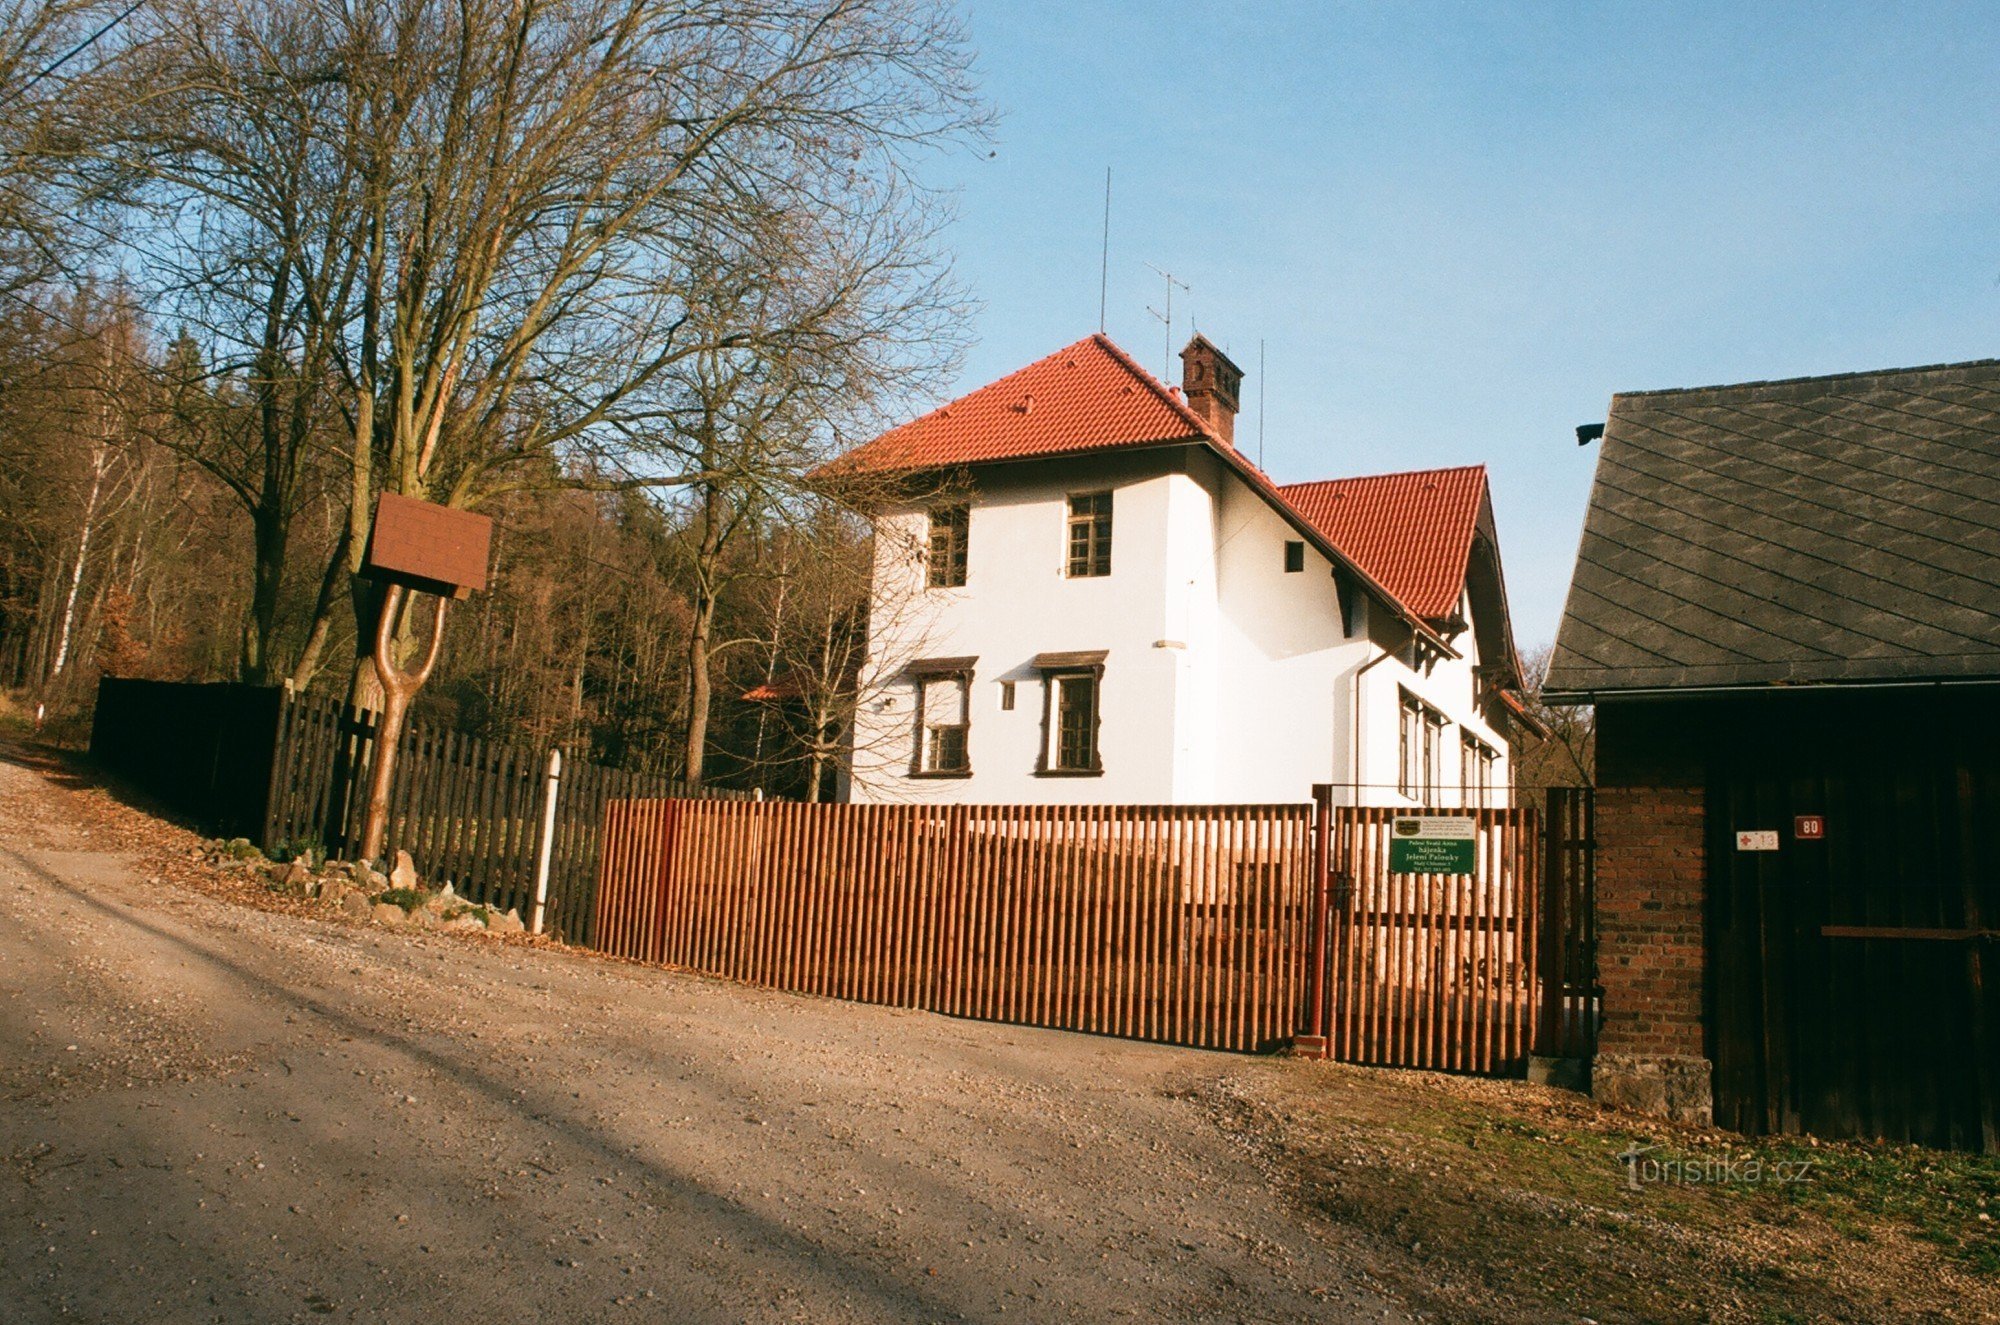 Jelení palouky game reserve near Hradec